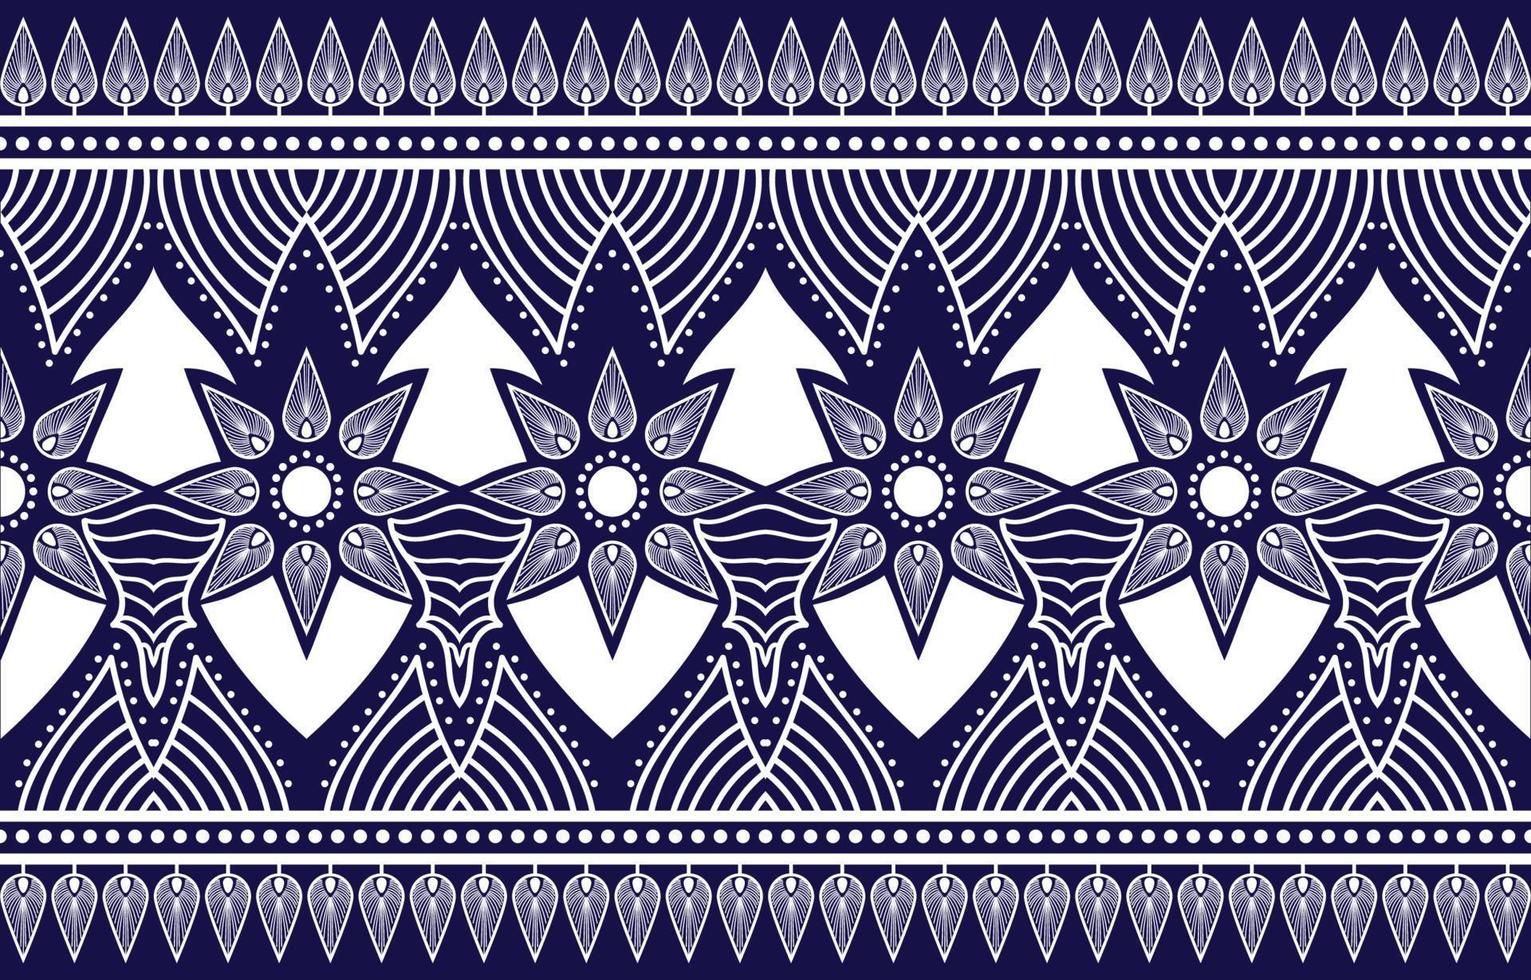 dekorativer abstrakter geomatrischer ethnischer orientalischer mit floralem Muster traditionelles, abstraktes Hintergrunddesign für Teppich, Tapete, Kleidung, Verpackung, Batik, Stoff, traditioneller Druckvektor vektor